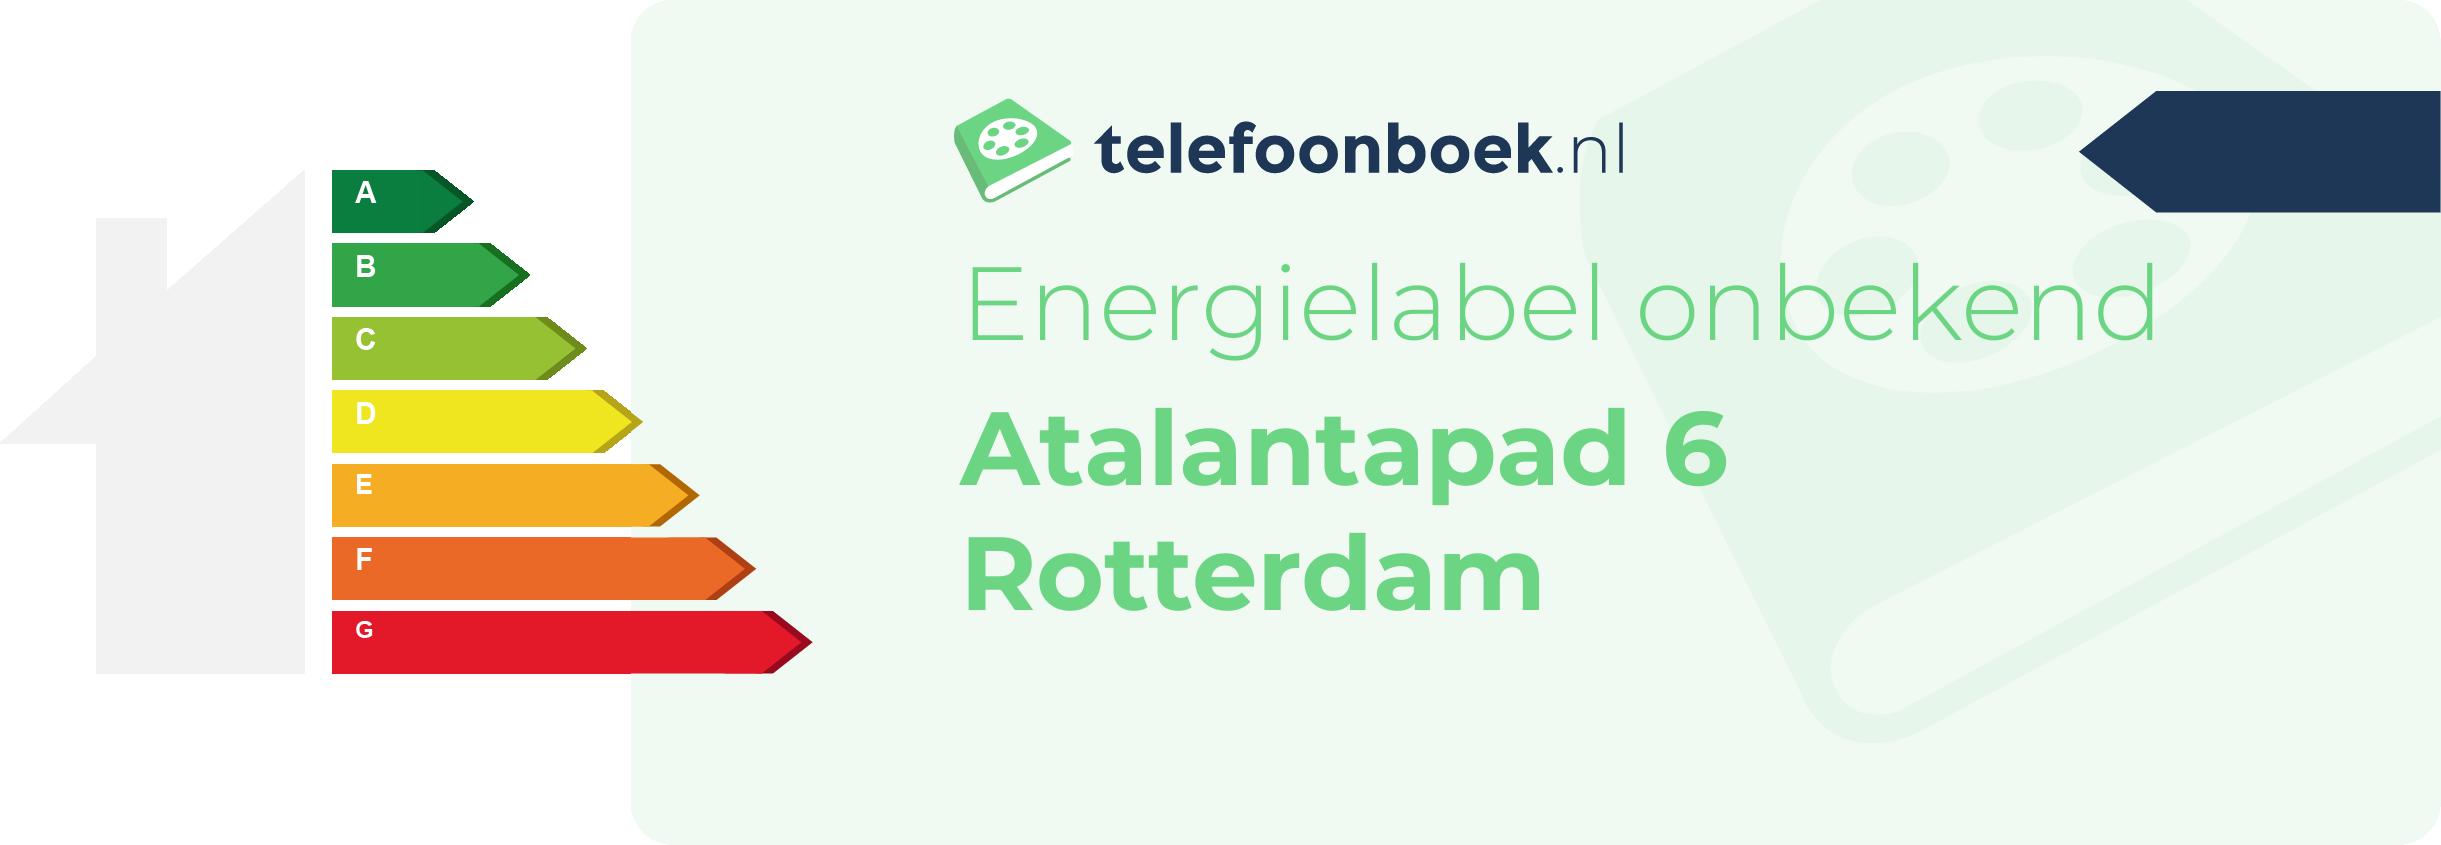 Energielabel Atalantapad 6 Rotterdam